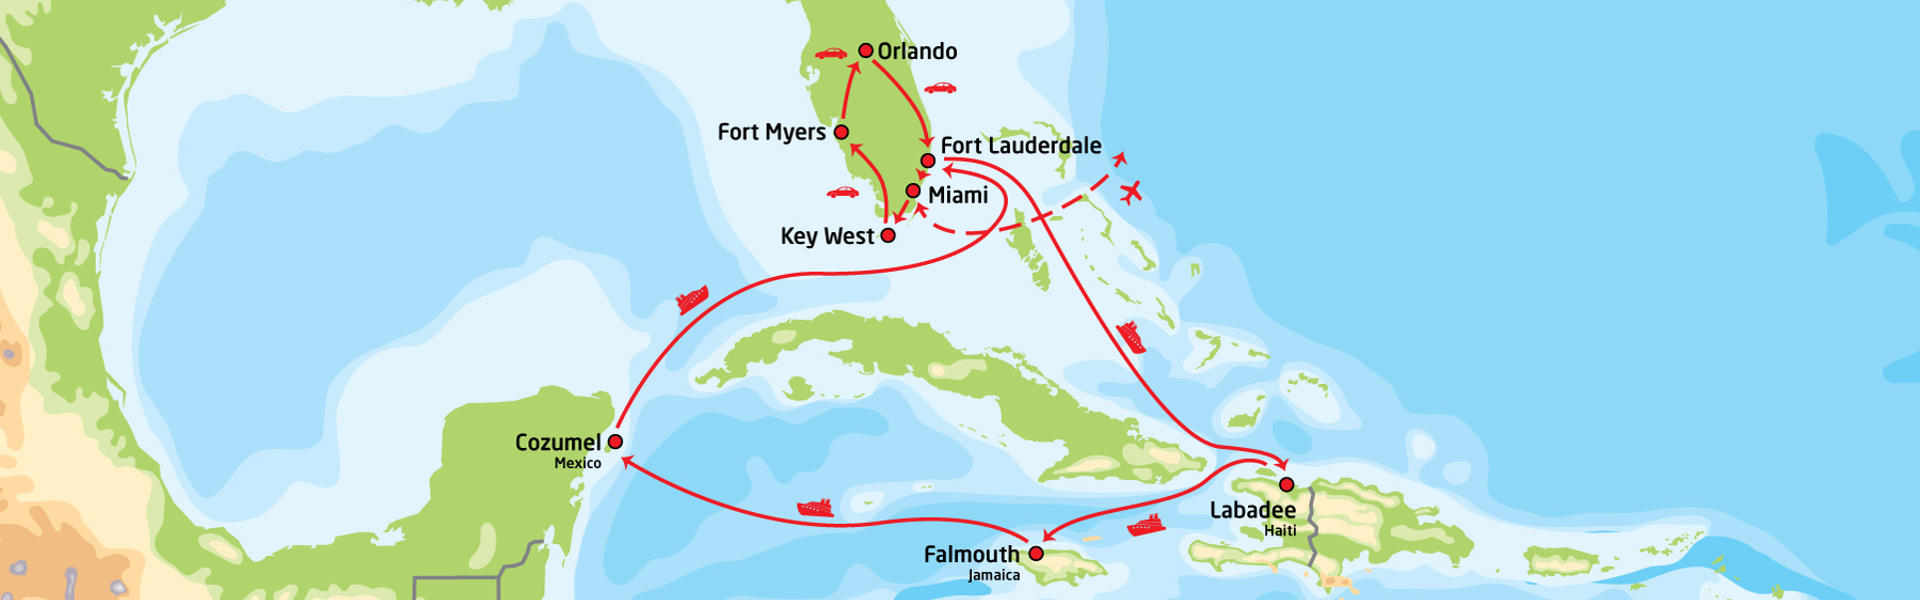 Florida fra kyst til kyst & cruise i Karibien | Reiserute